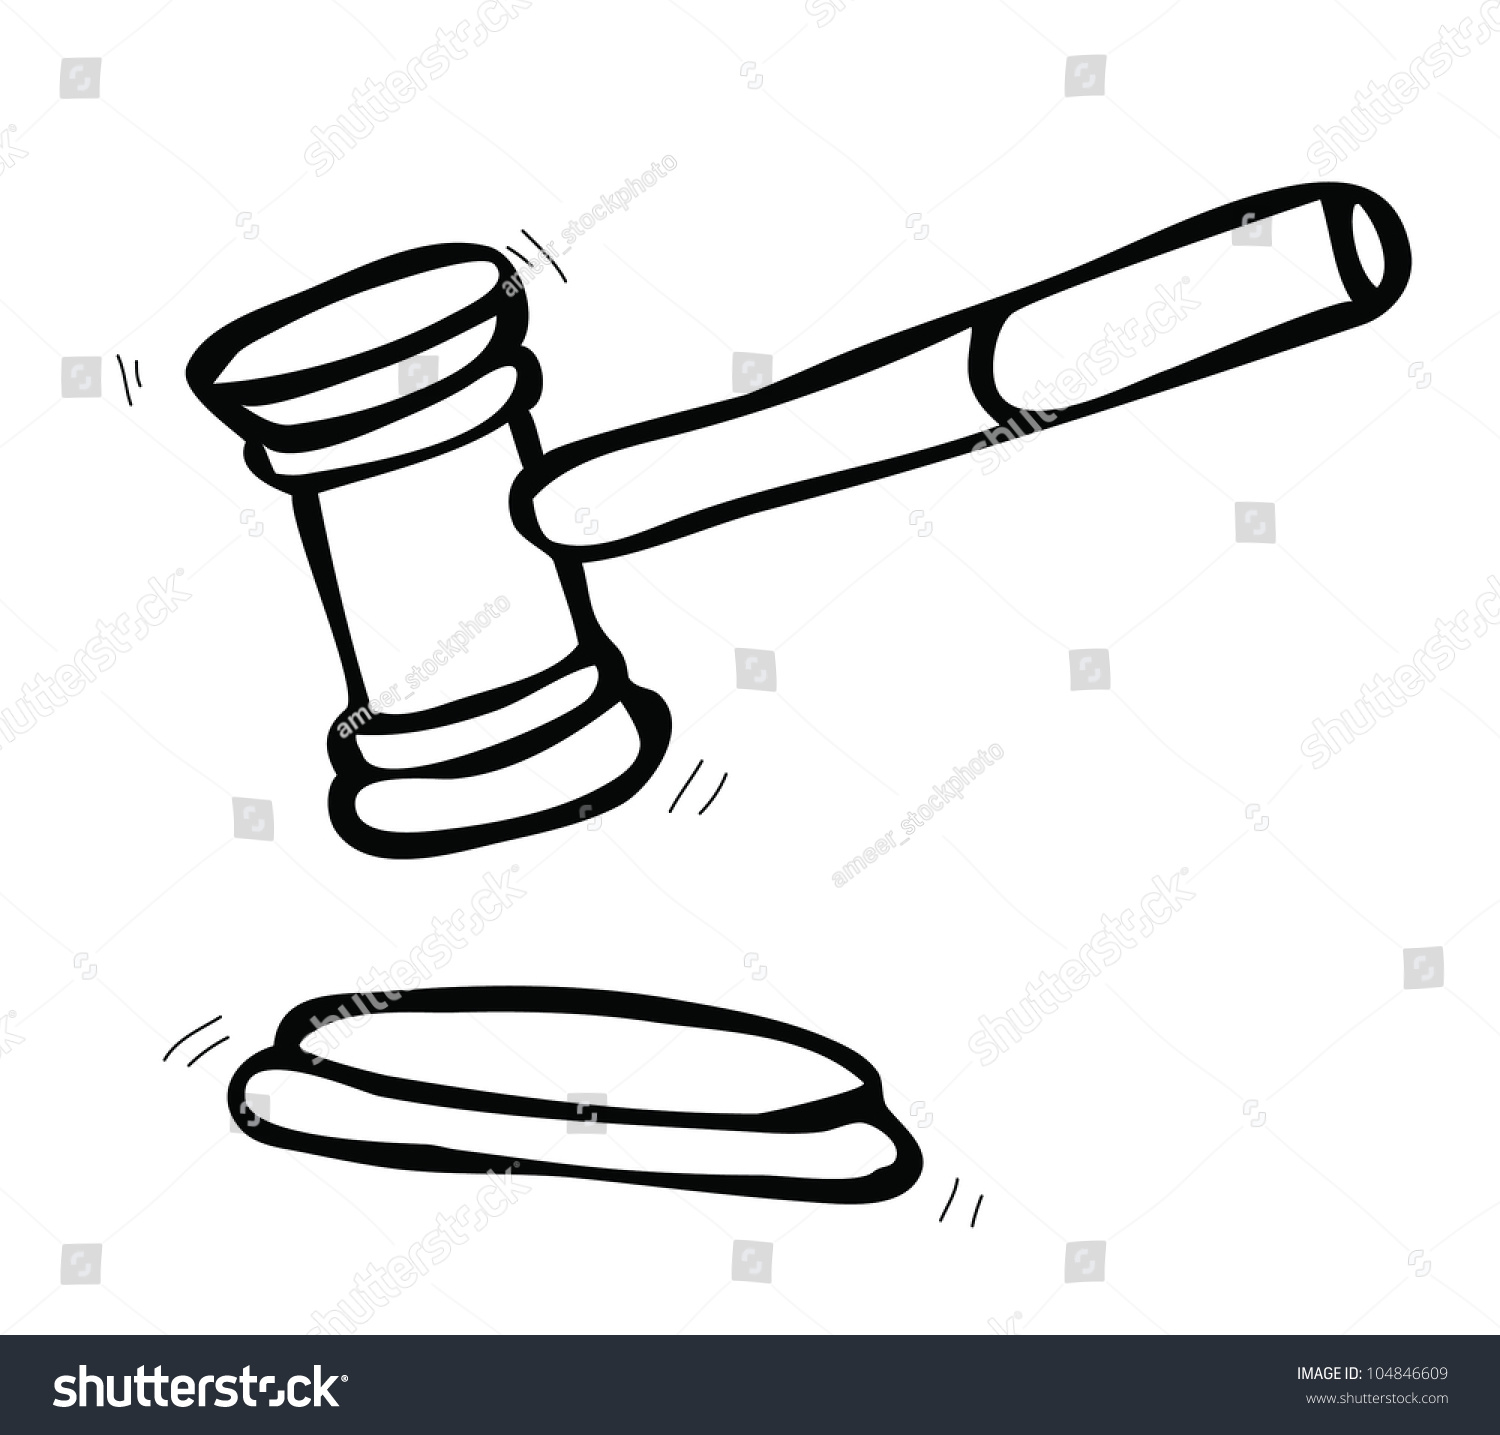 Hammer Of Judge Stock Vector Illustration 104846609 Shutterstock